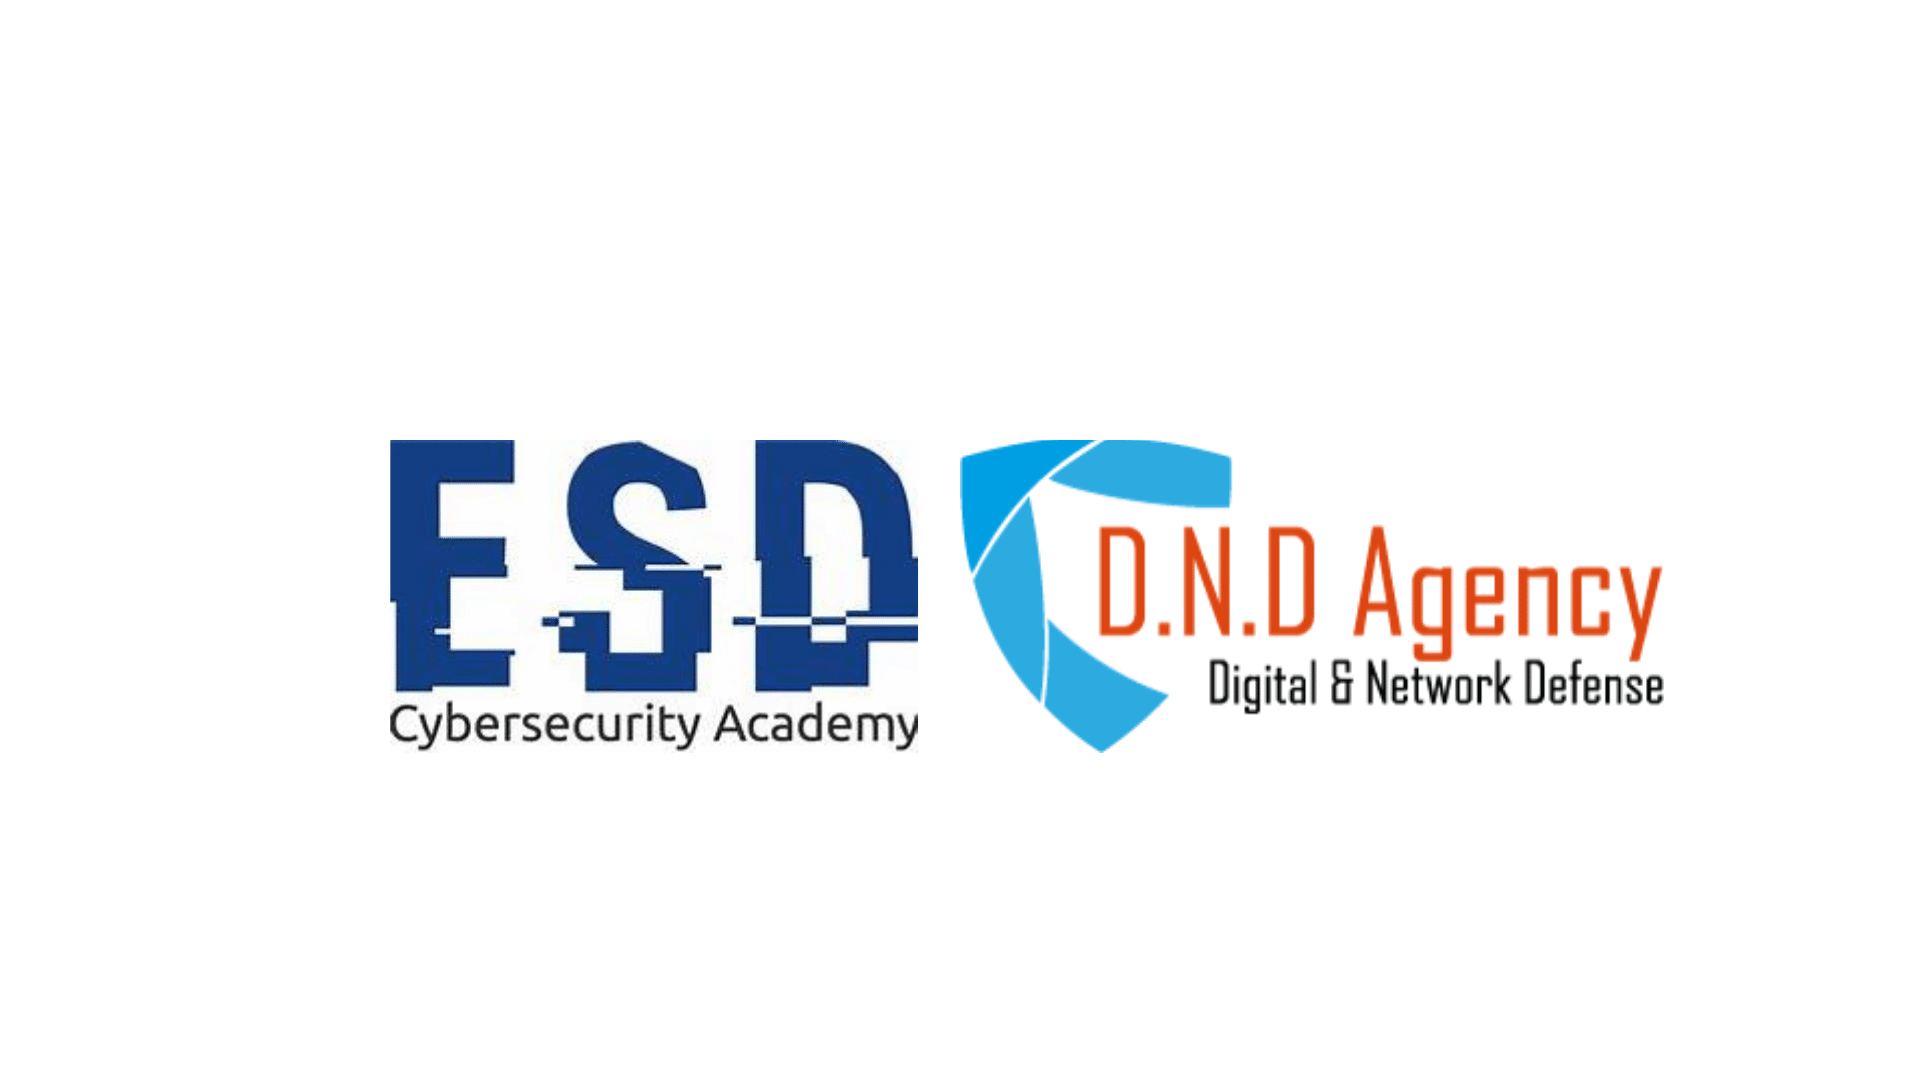 DND Agency X ESD Academy